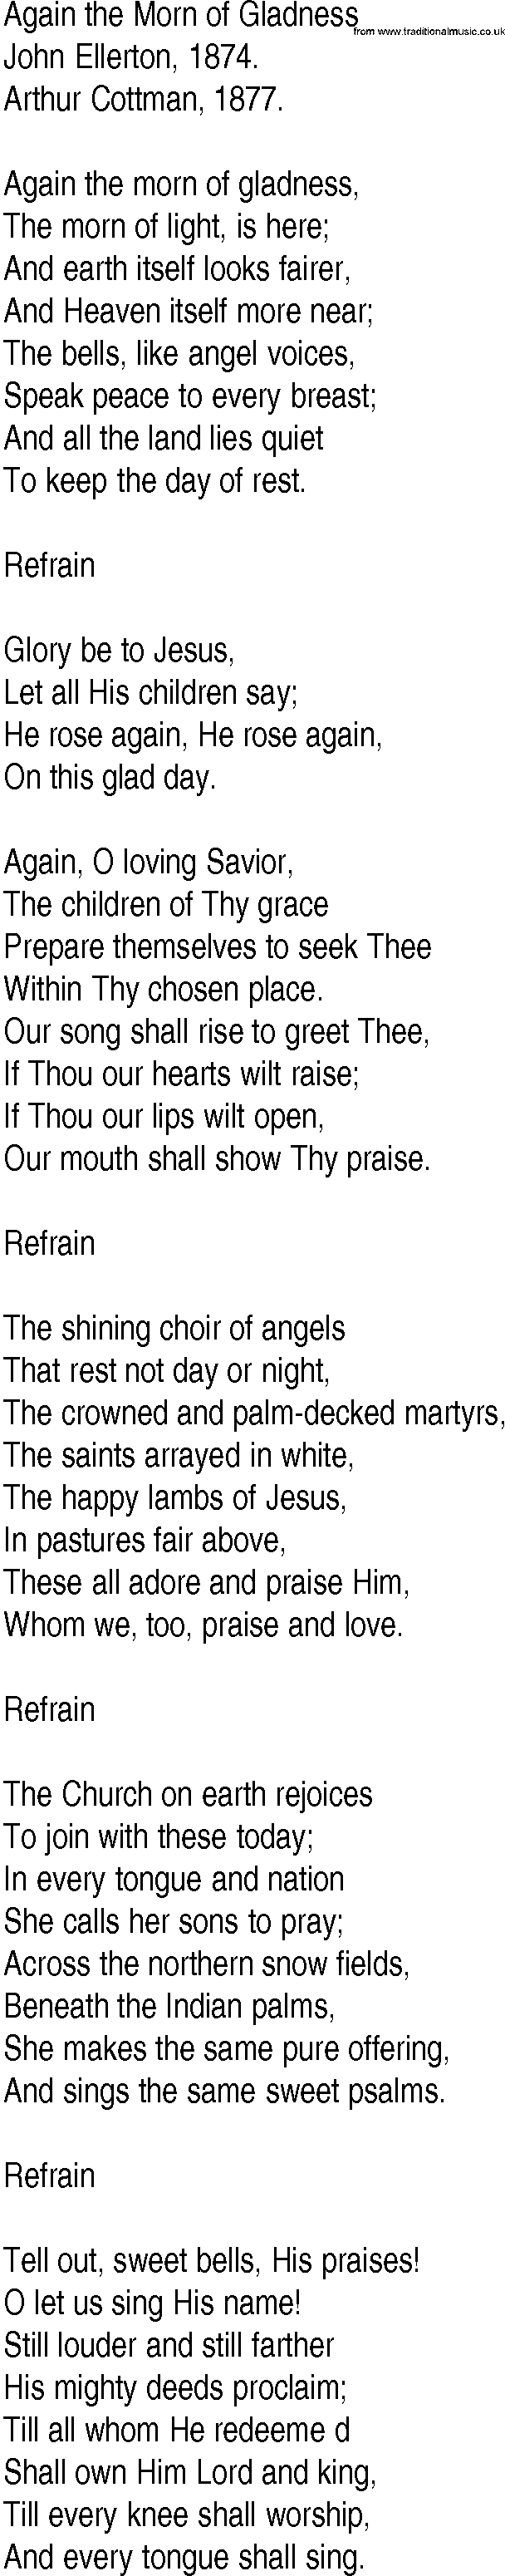 Hymn and Gospel Song: Again the Morn of Gladness by John Ellerton lyrics